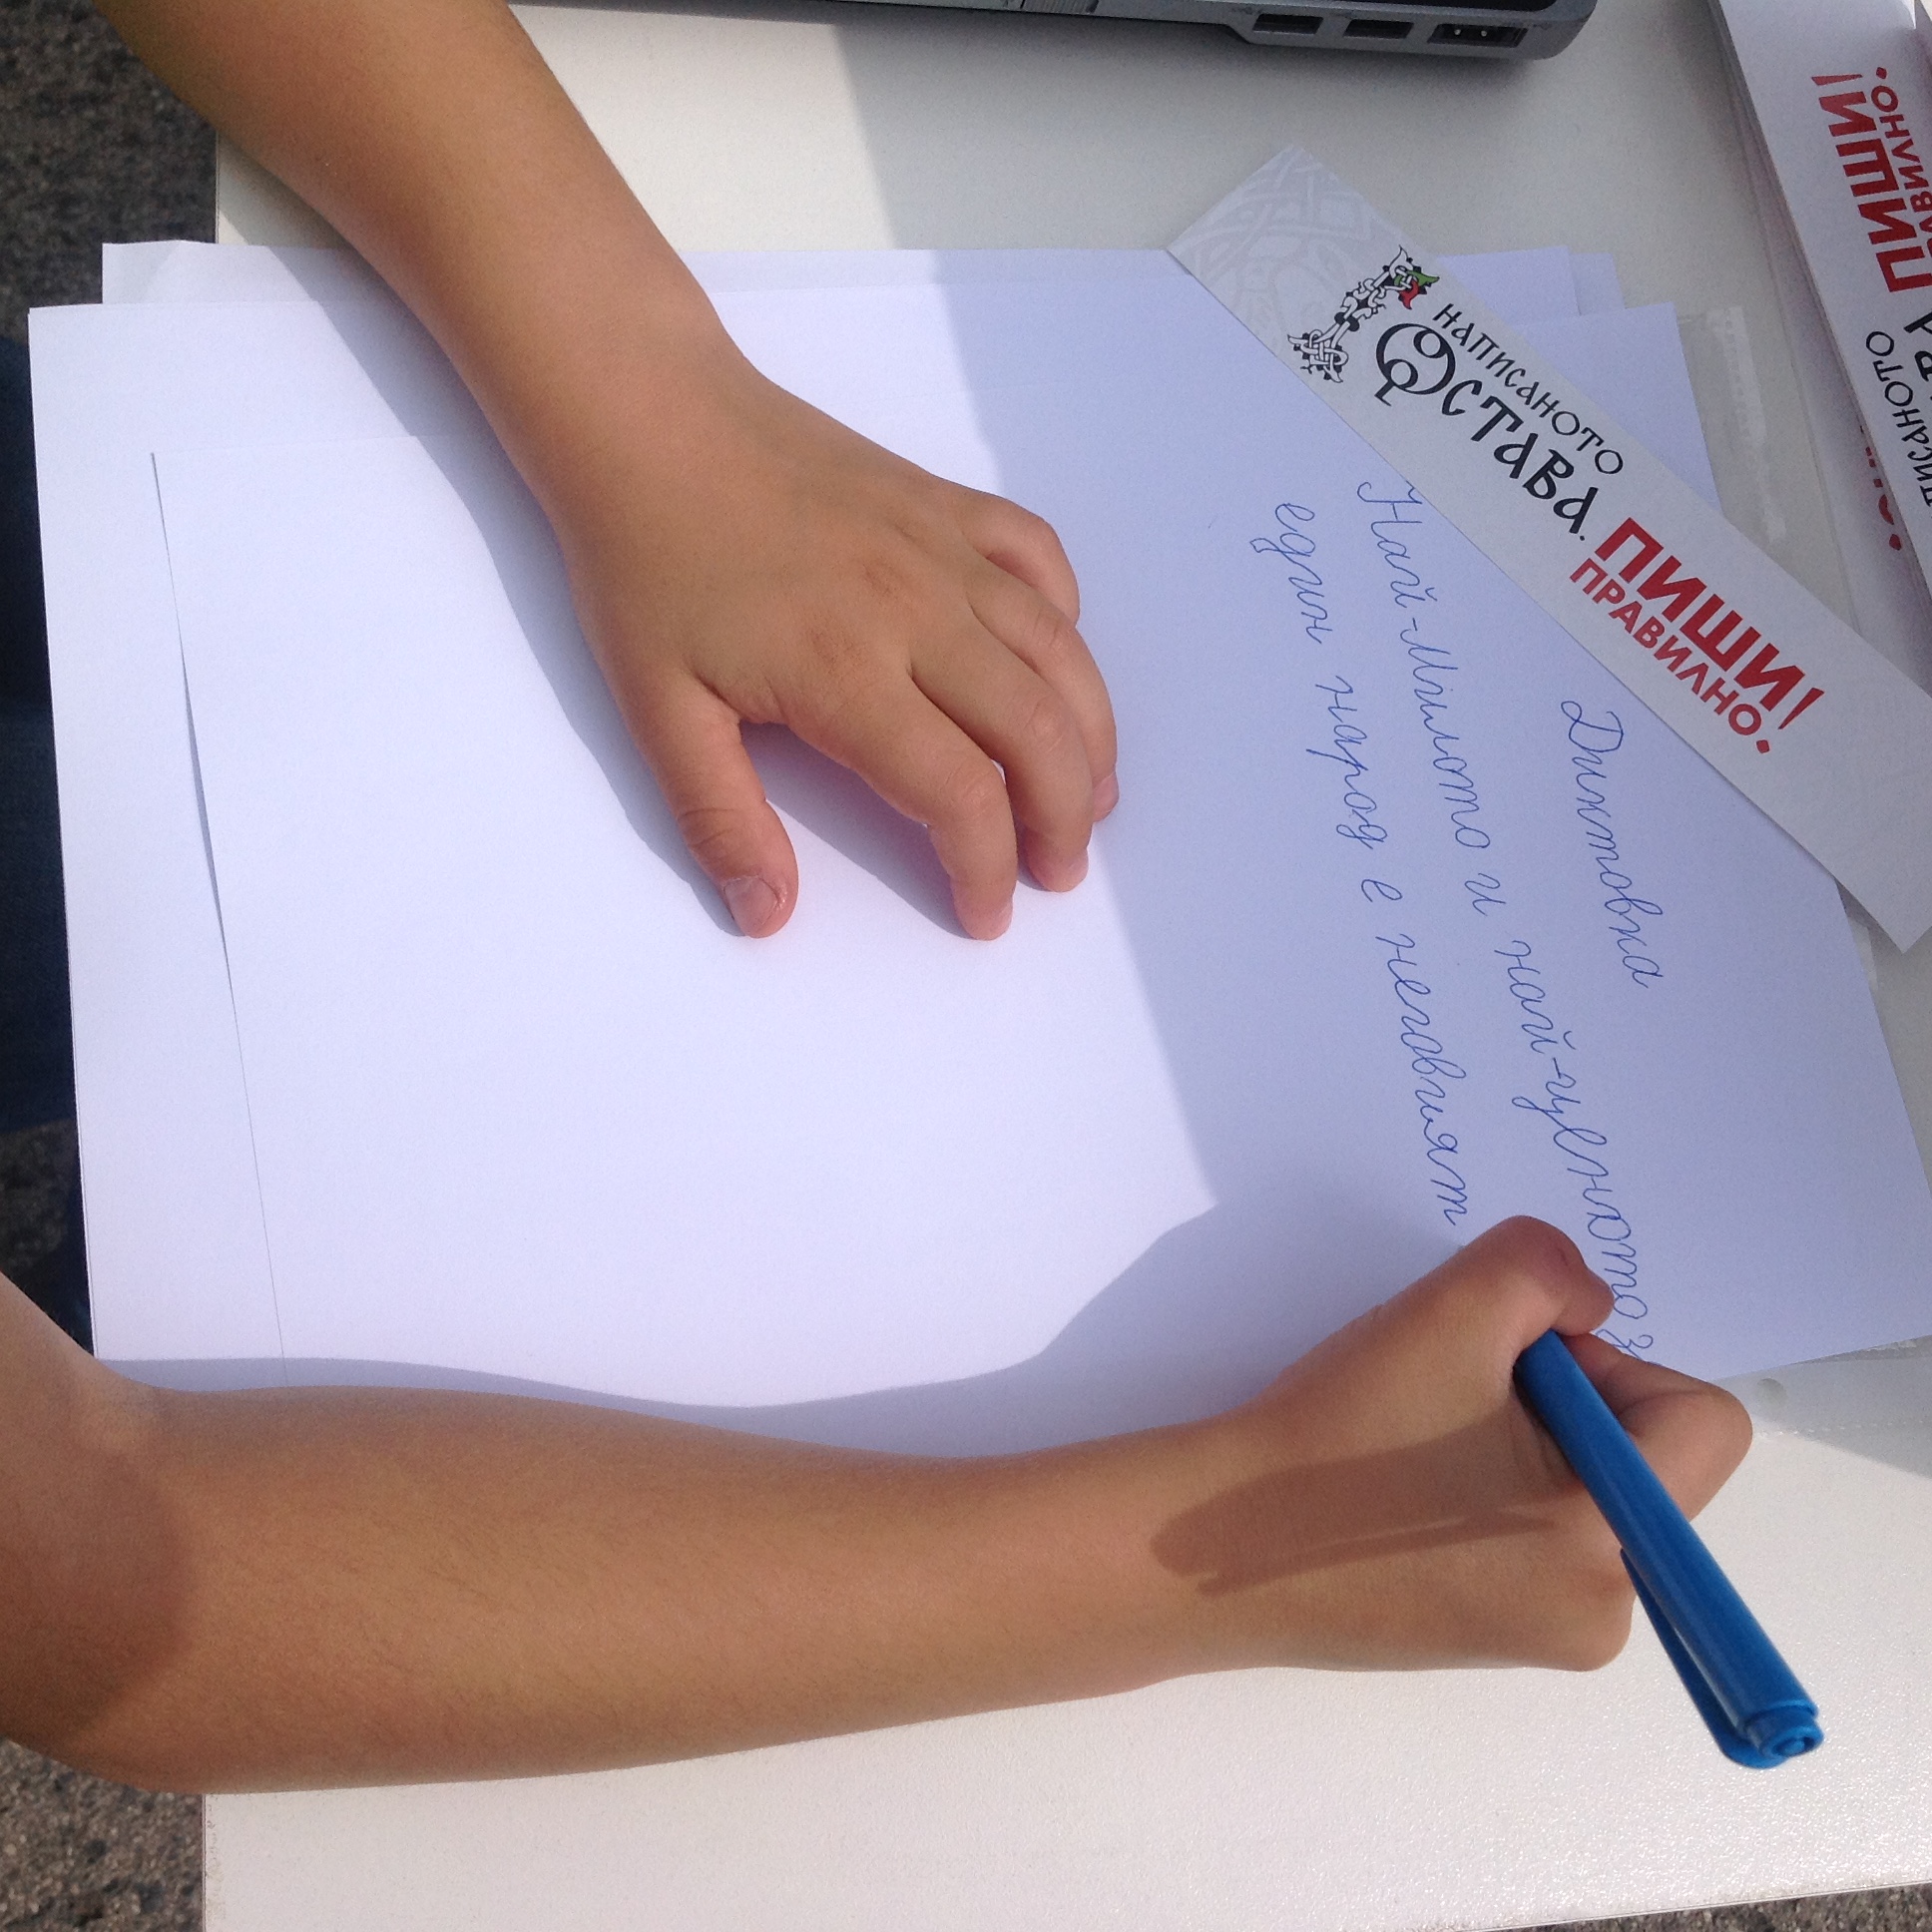 Кампанията „Написаното остава. Пиши правилно!“ на 24 май 2018 година в София